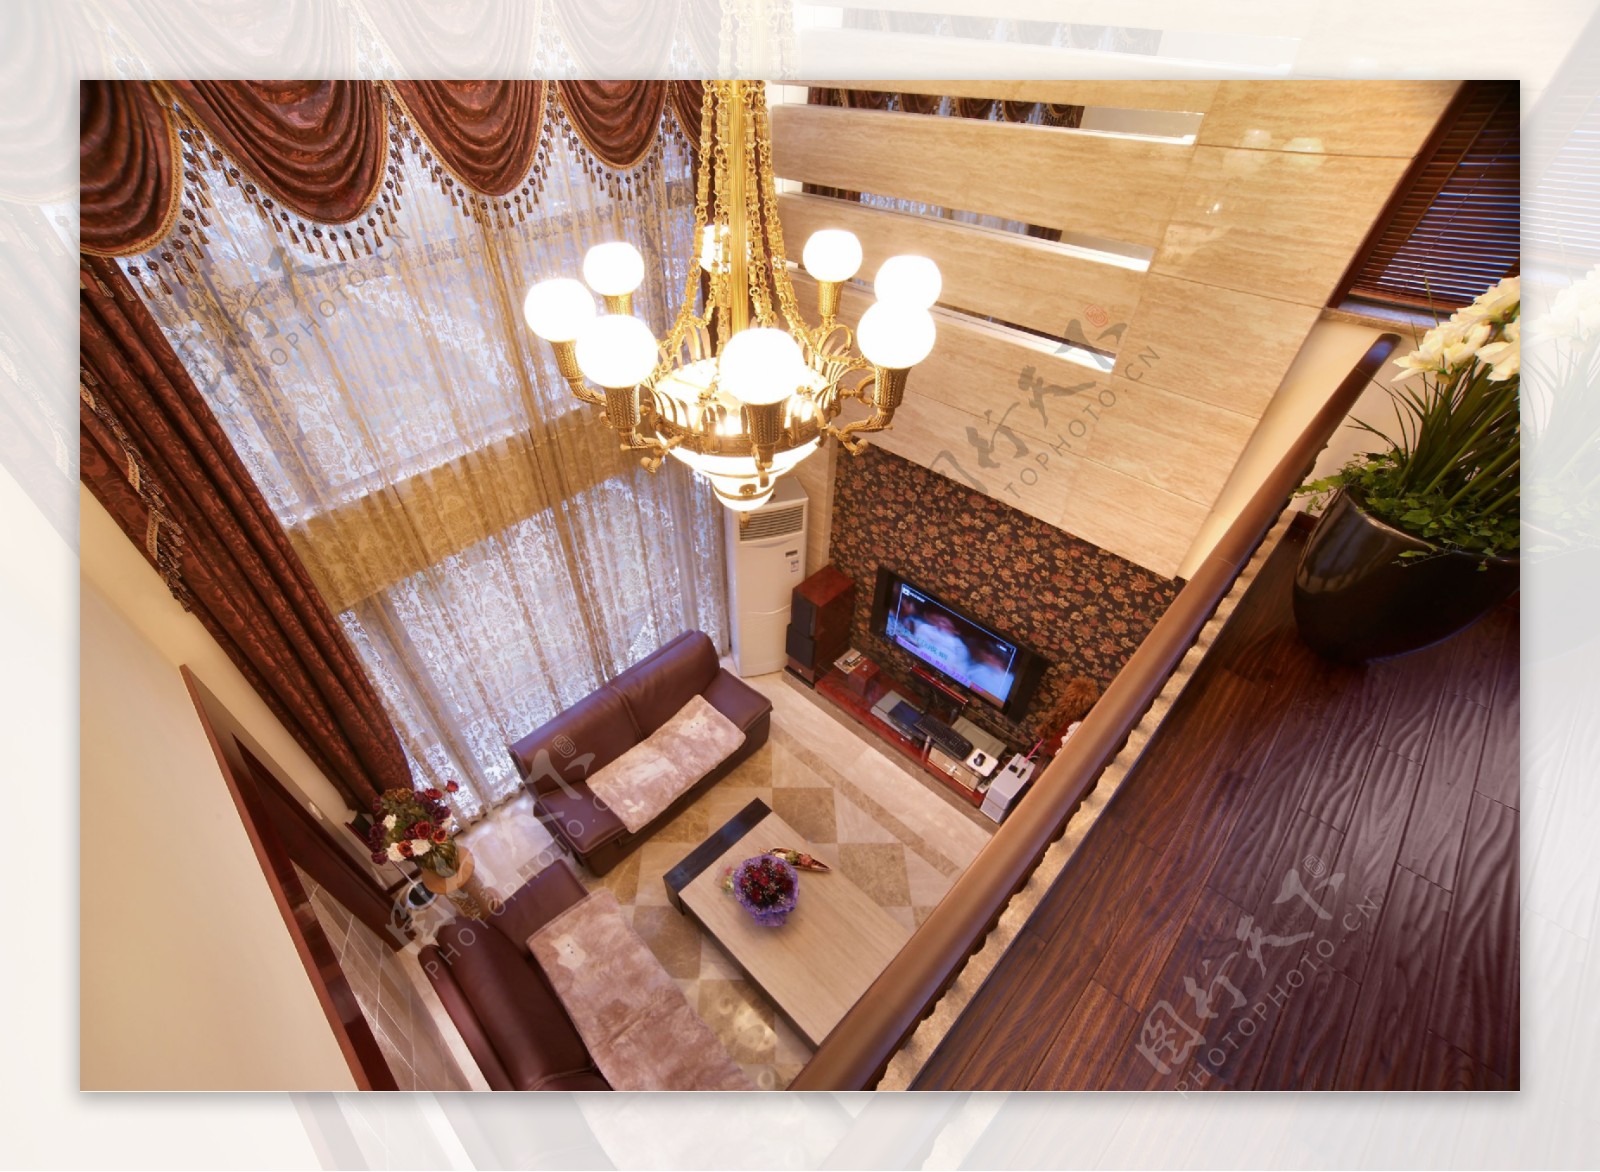 美式古典别墅客厅装修效果图